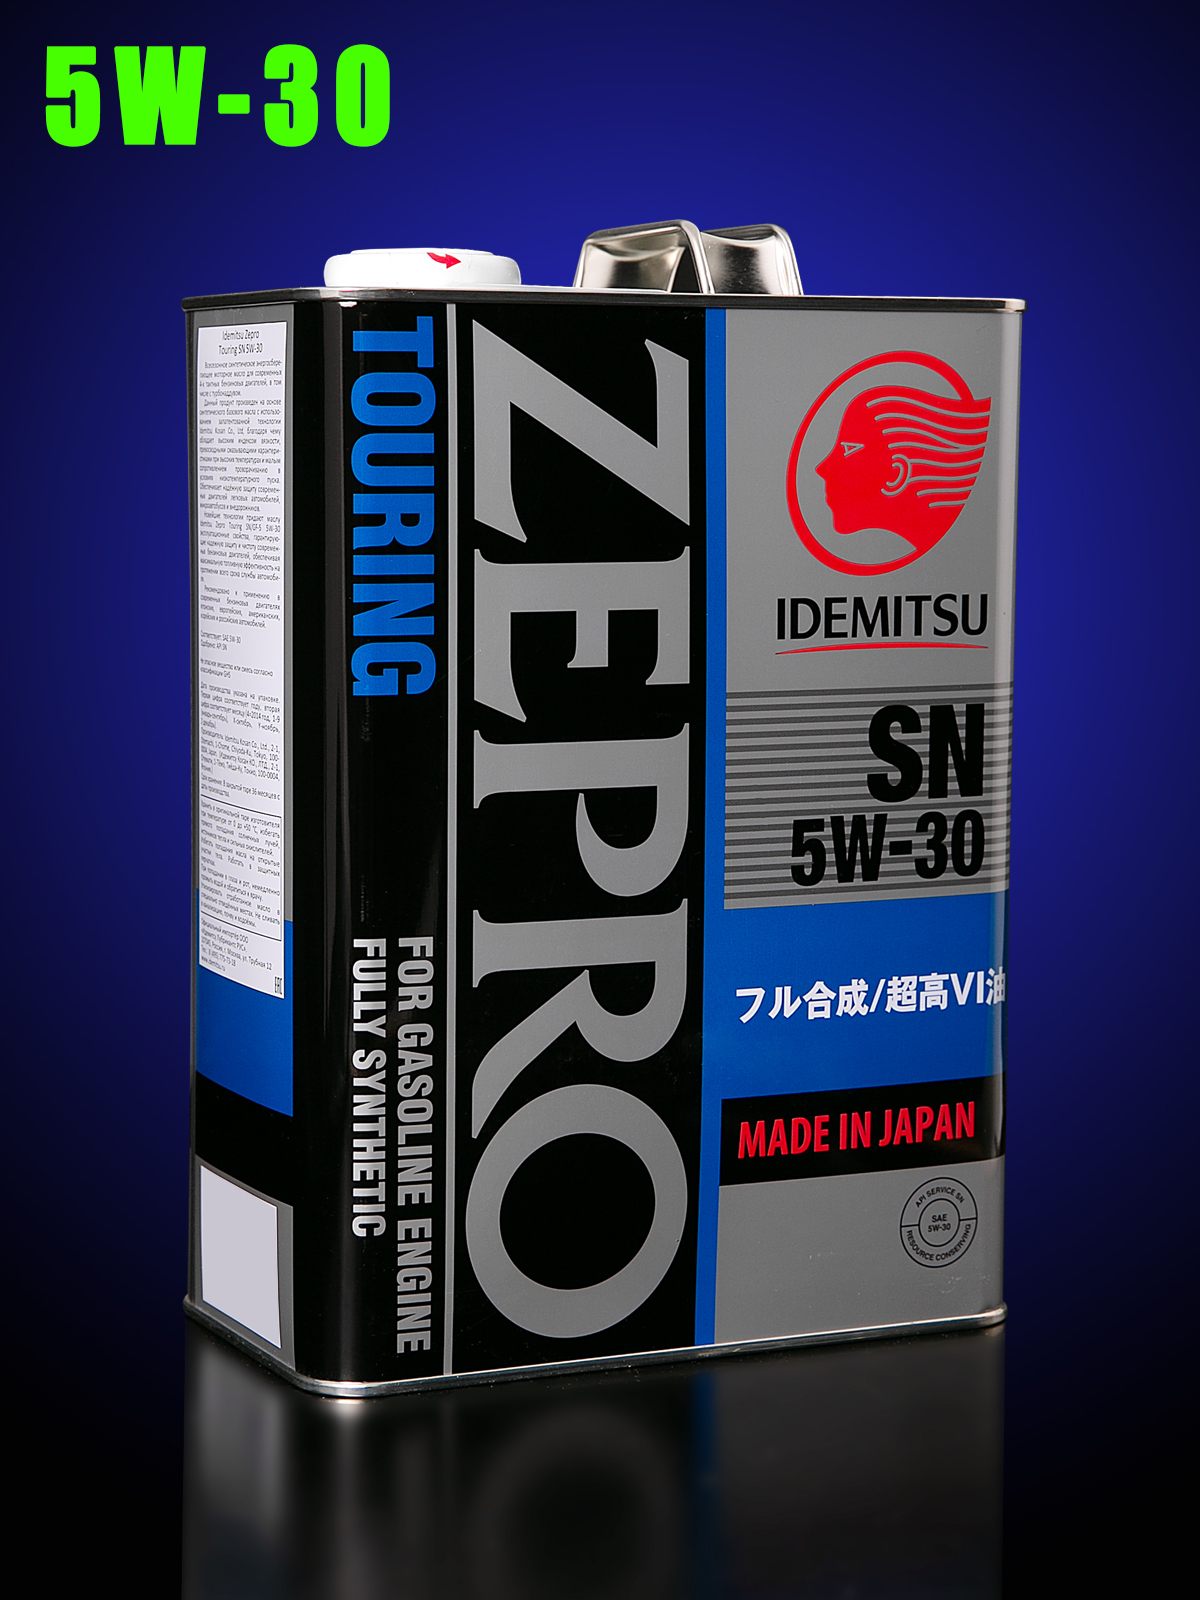 Zepro 5w30 купить. Идемитсу 5w30 синтетика зепро. Идемитсу зепро туринг 5w30. Idemitsu Zepro Touring 5w-30. Синтетическое моторное масло Idemitsu Zepro Touring 5w-30, 4 л.